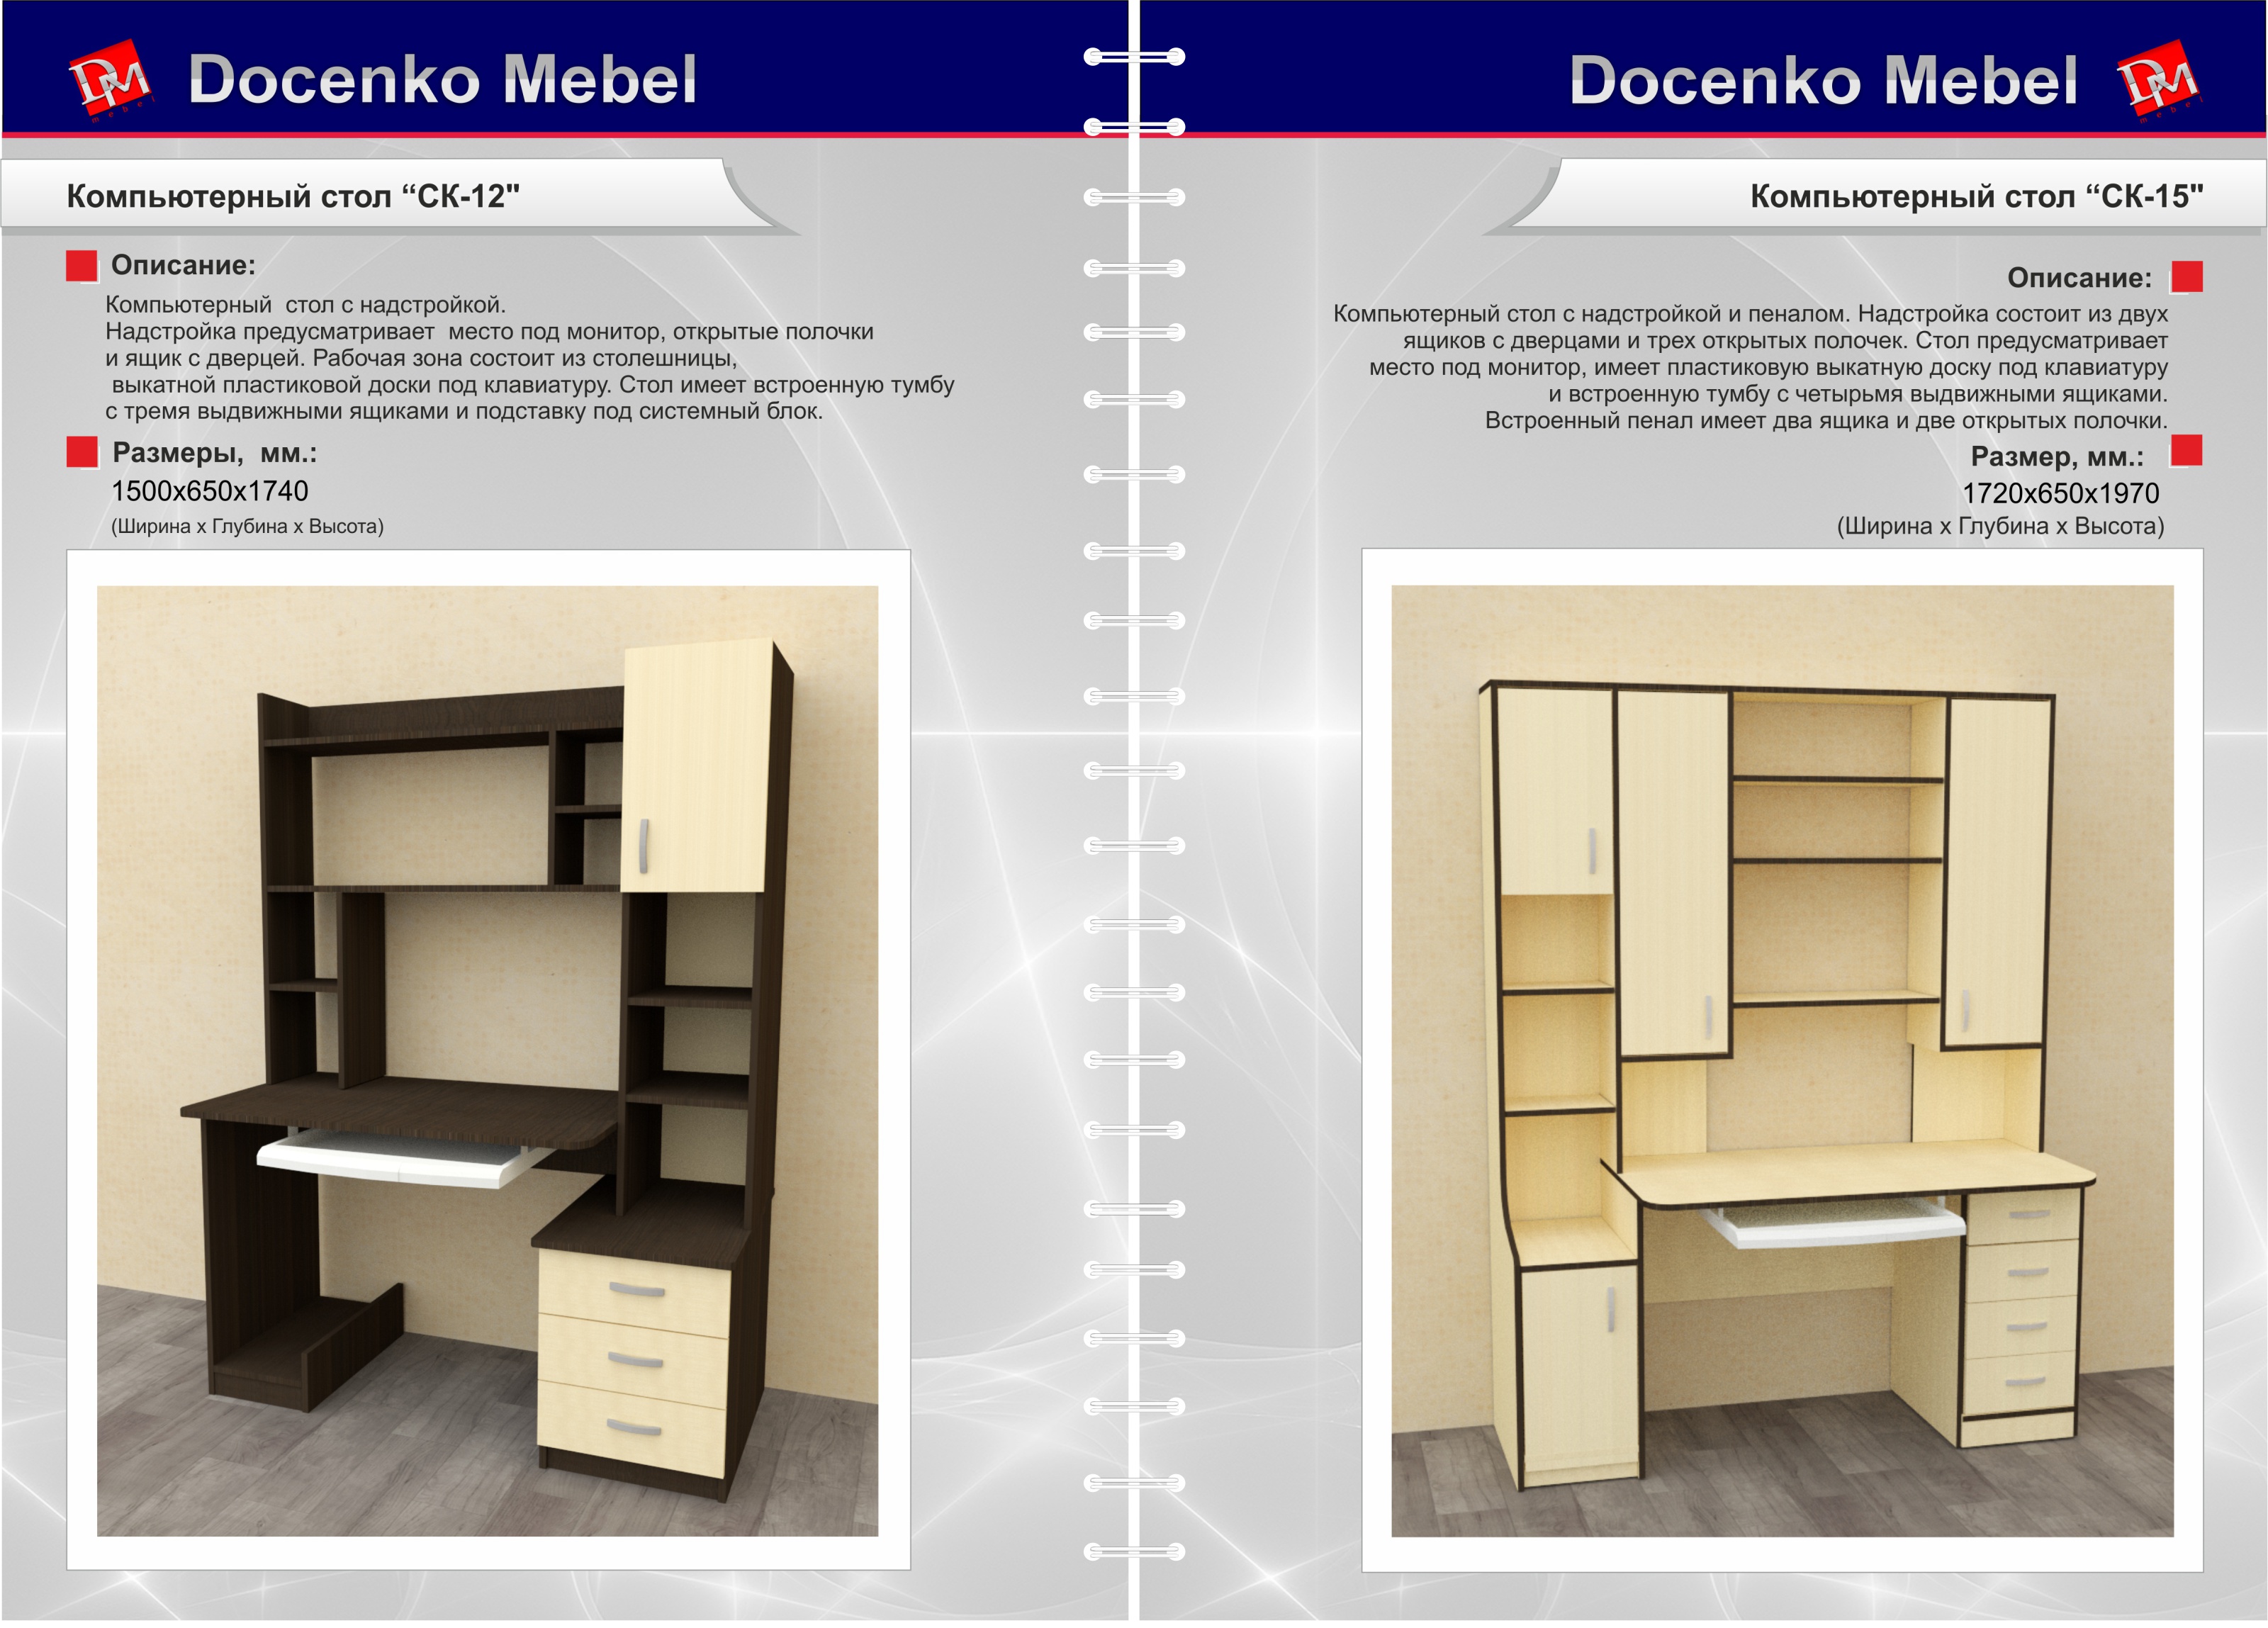 Каталог мебели формат А4 - Производственная компния по изготовлению корпусной мебели Доценко Мебель г.Миасс